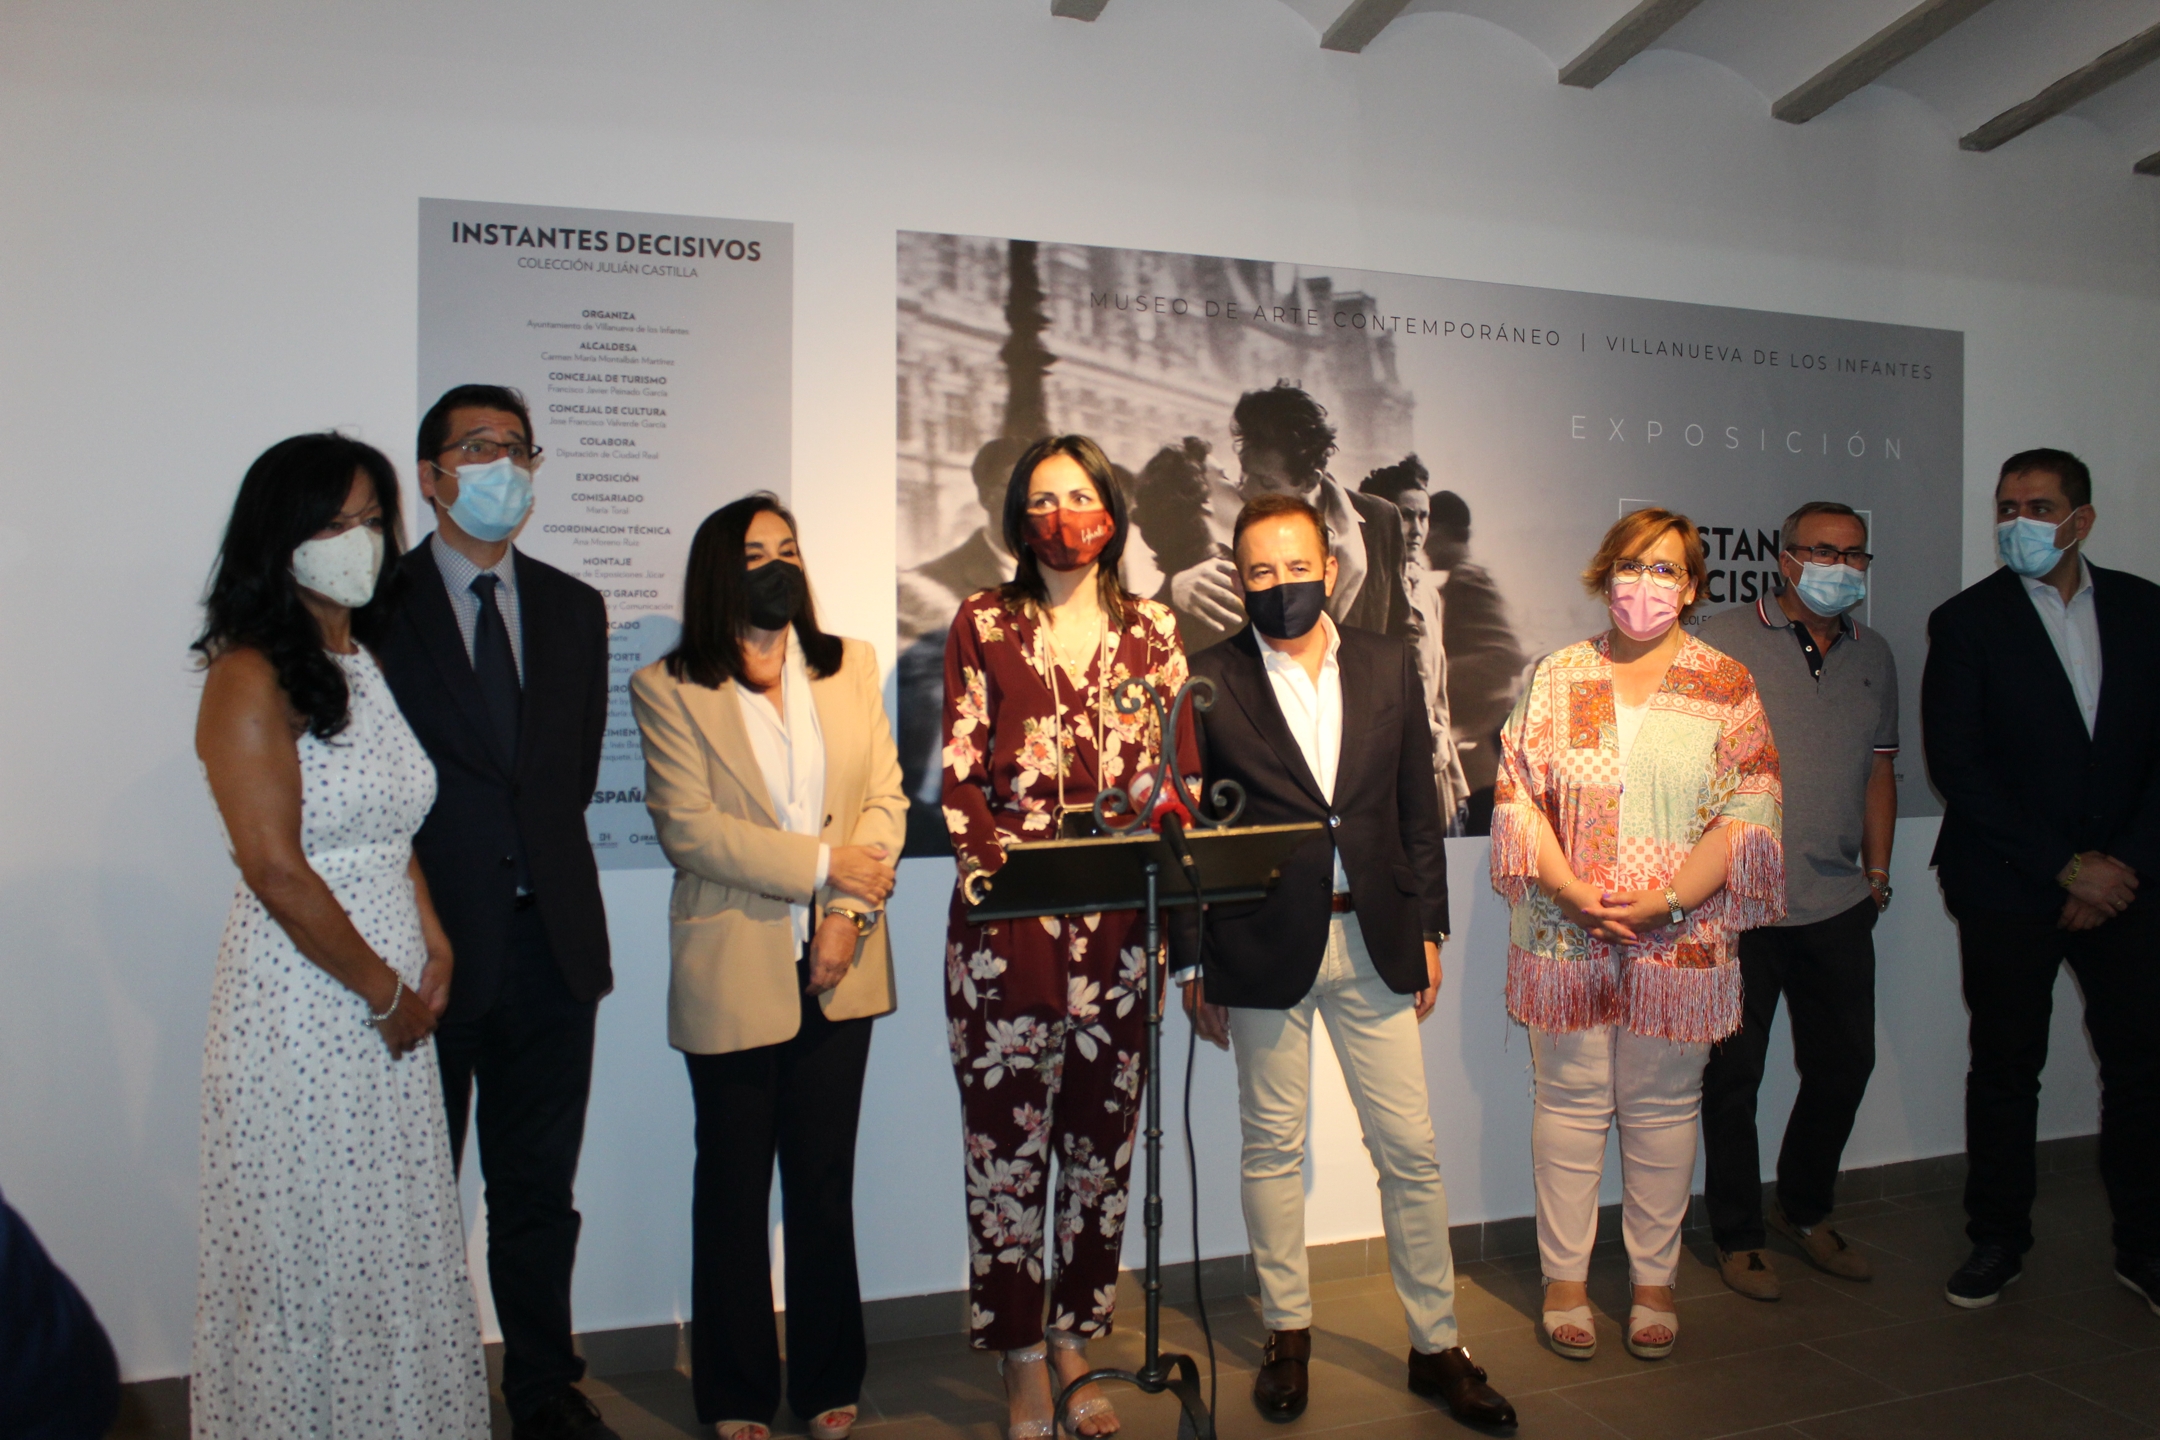 Inaugurada la exposición INSTANTES DECISIVOS de la FOTOGRAFÍA en el Museo de Arte Contemporáneo de Villanueva de los Infantes